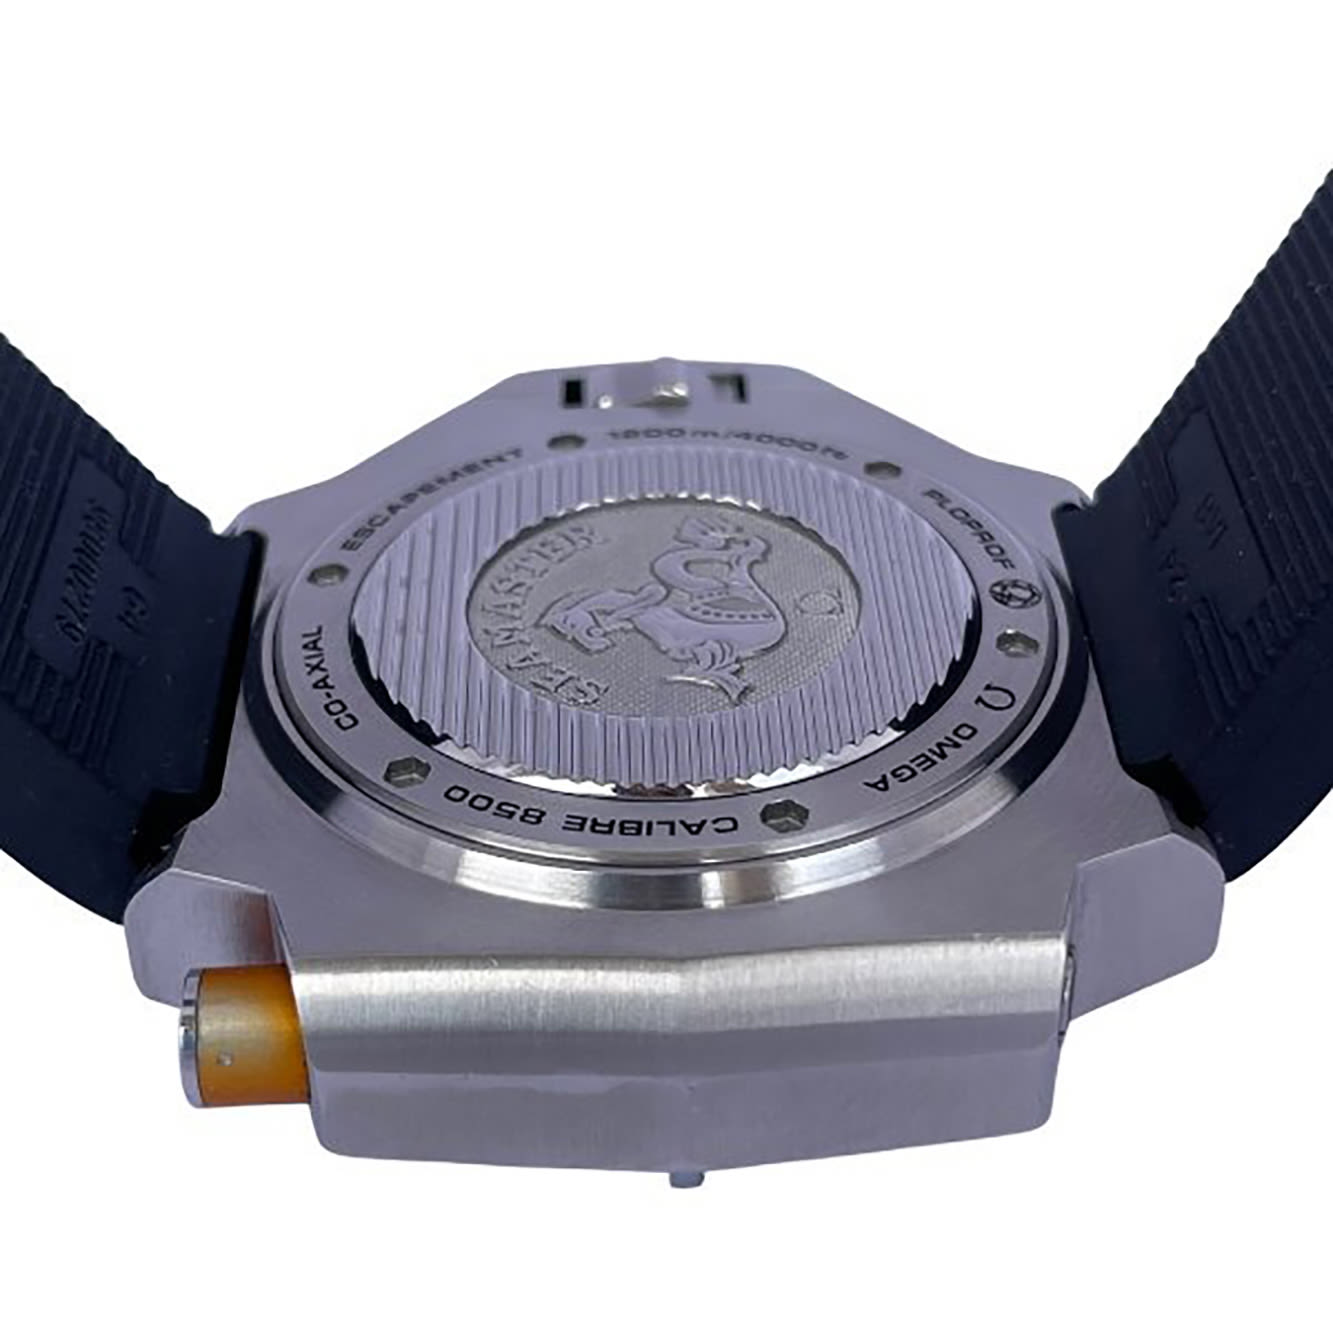 Omega Seamaster Ploprof wristwatch - Image 5 of 6